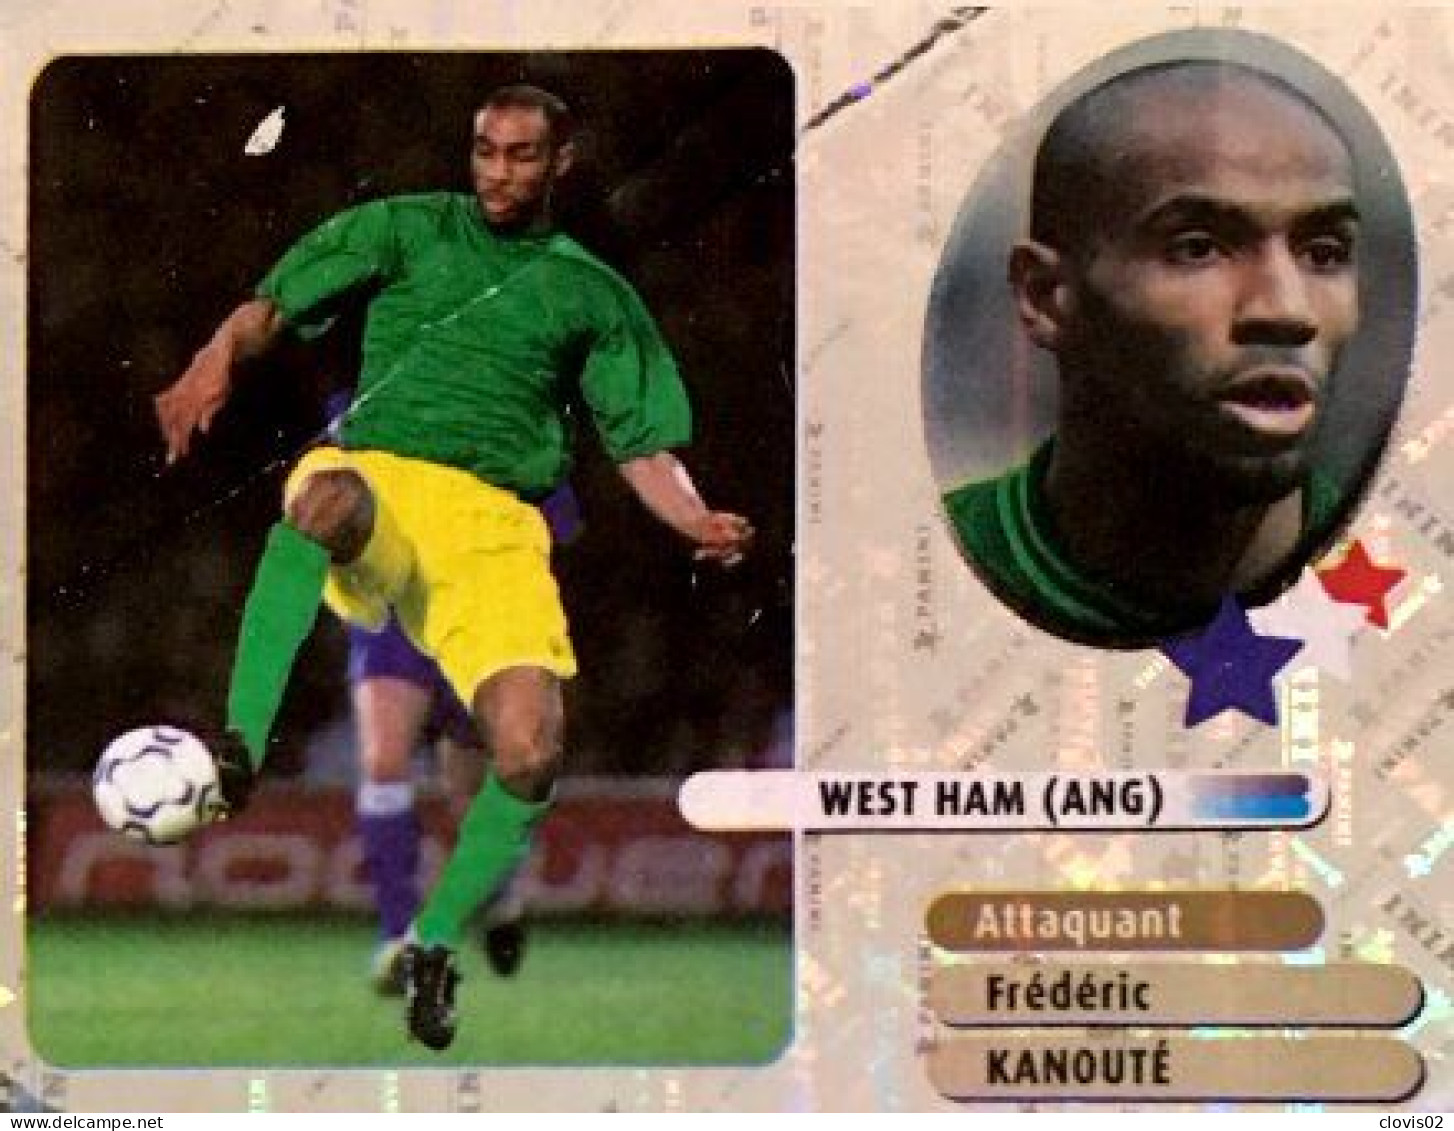 352 Frédéric Kanouté - West Ham - Stars Du Foot - Panini France Foot 2003 Sticker Vignette - Edición Francesa